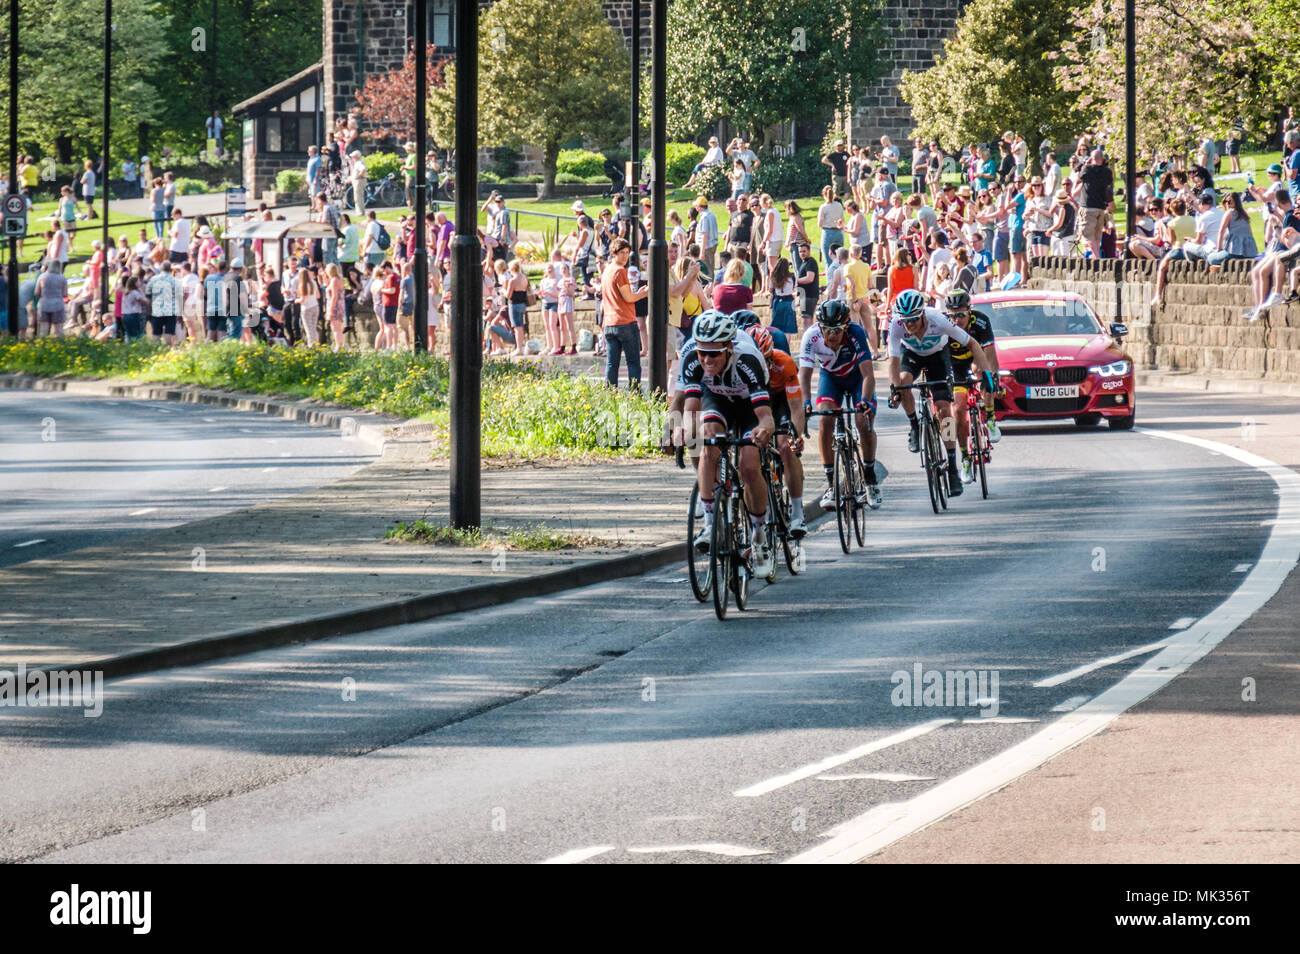 Leeds, Reino Unido - Mayo 06, 2018: Los ciclistas que participan en la etapa 4 del Tour de Yorkshire pass ovaciones de multitudes en Leeds. Crédito: colobusyeti.co.uk/Alamy Live News Foto de stock